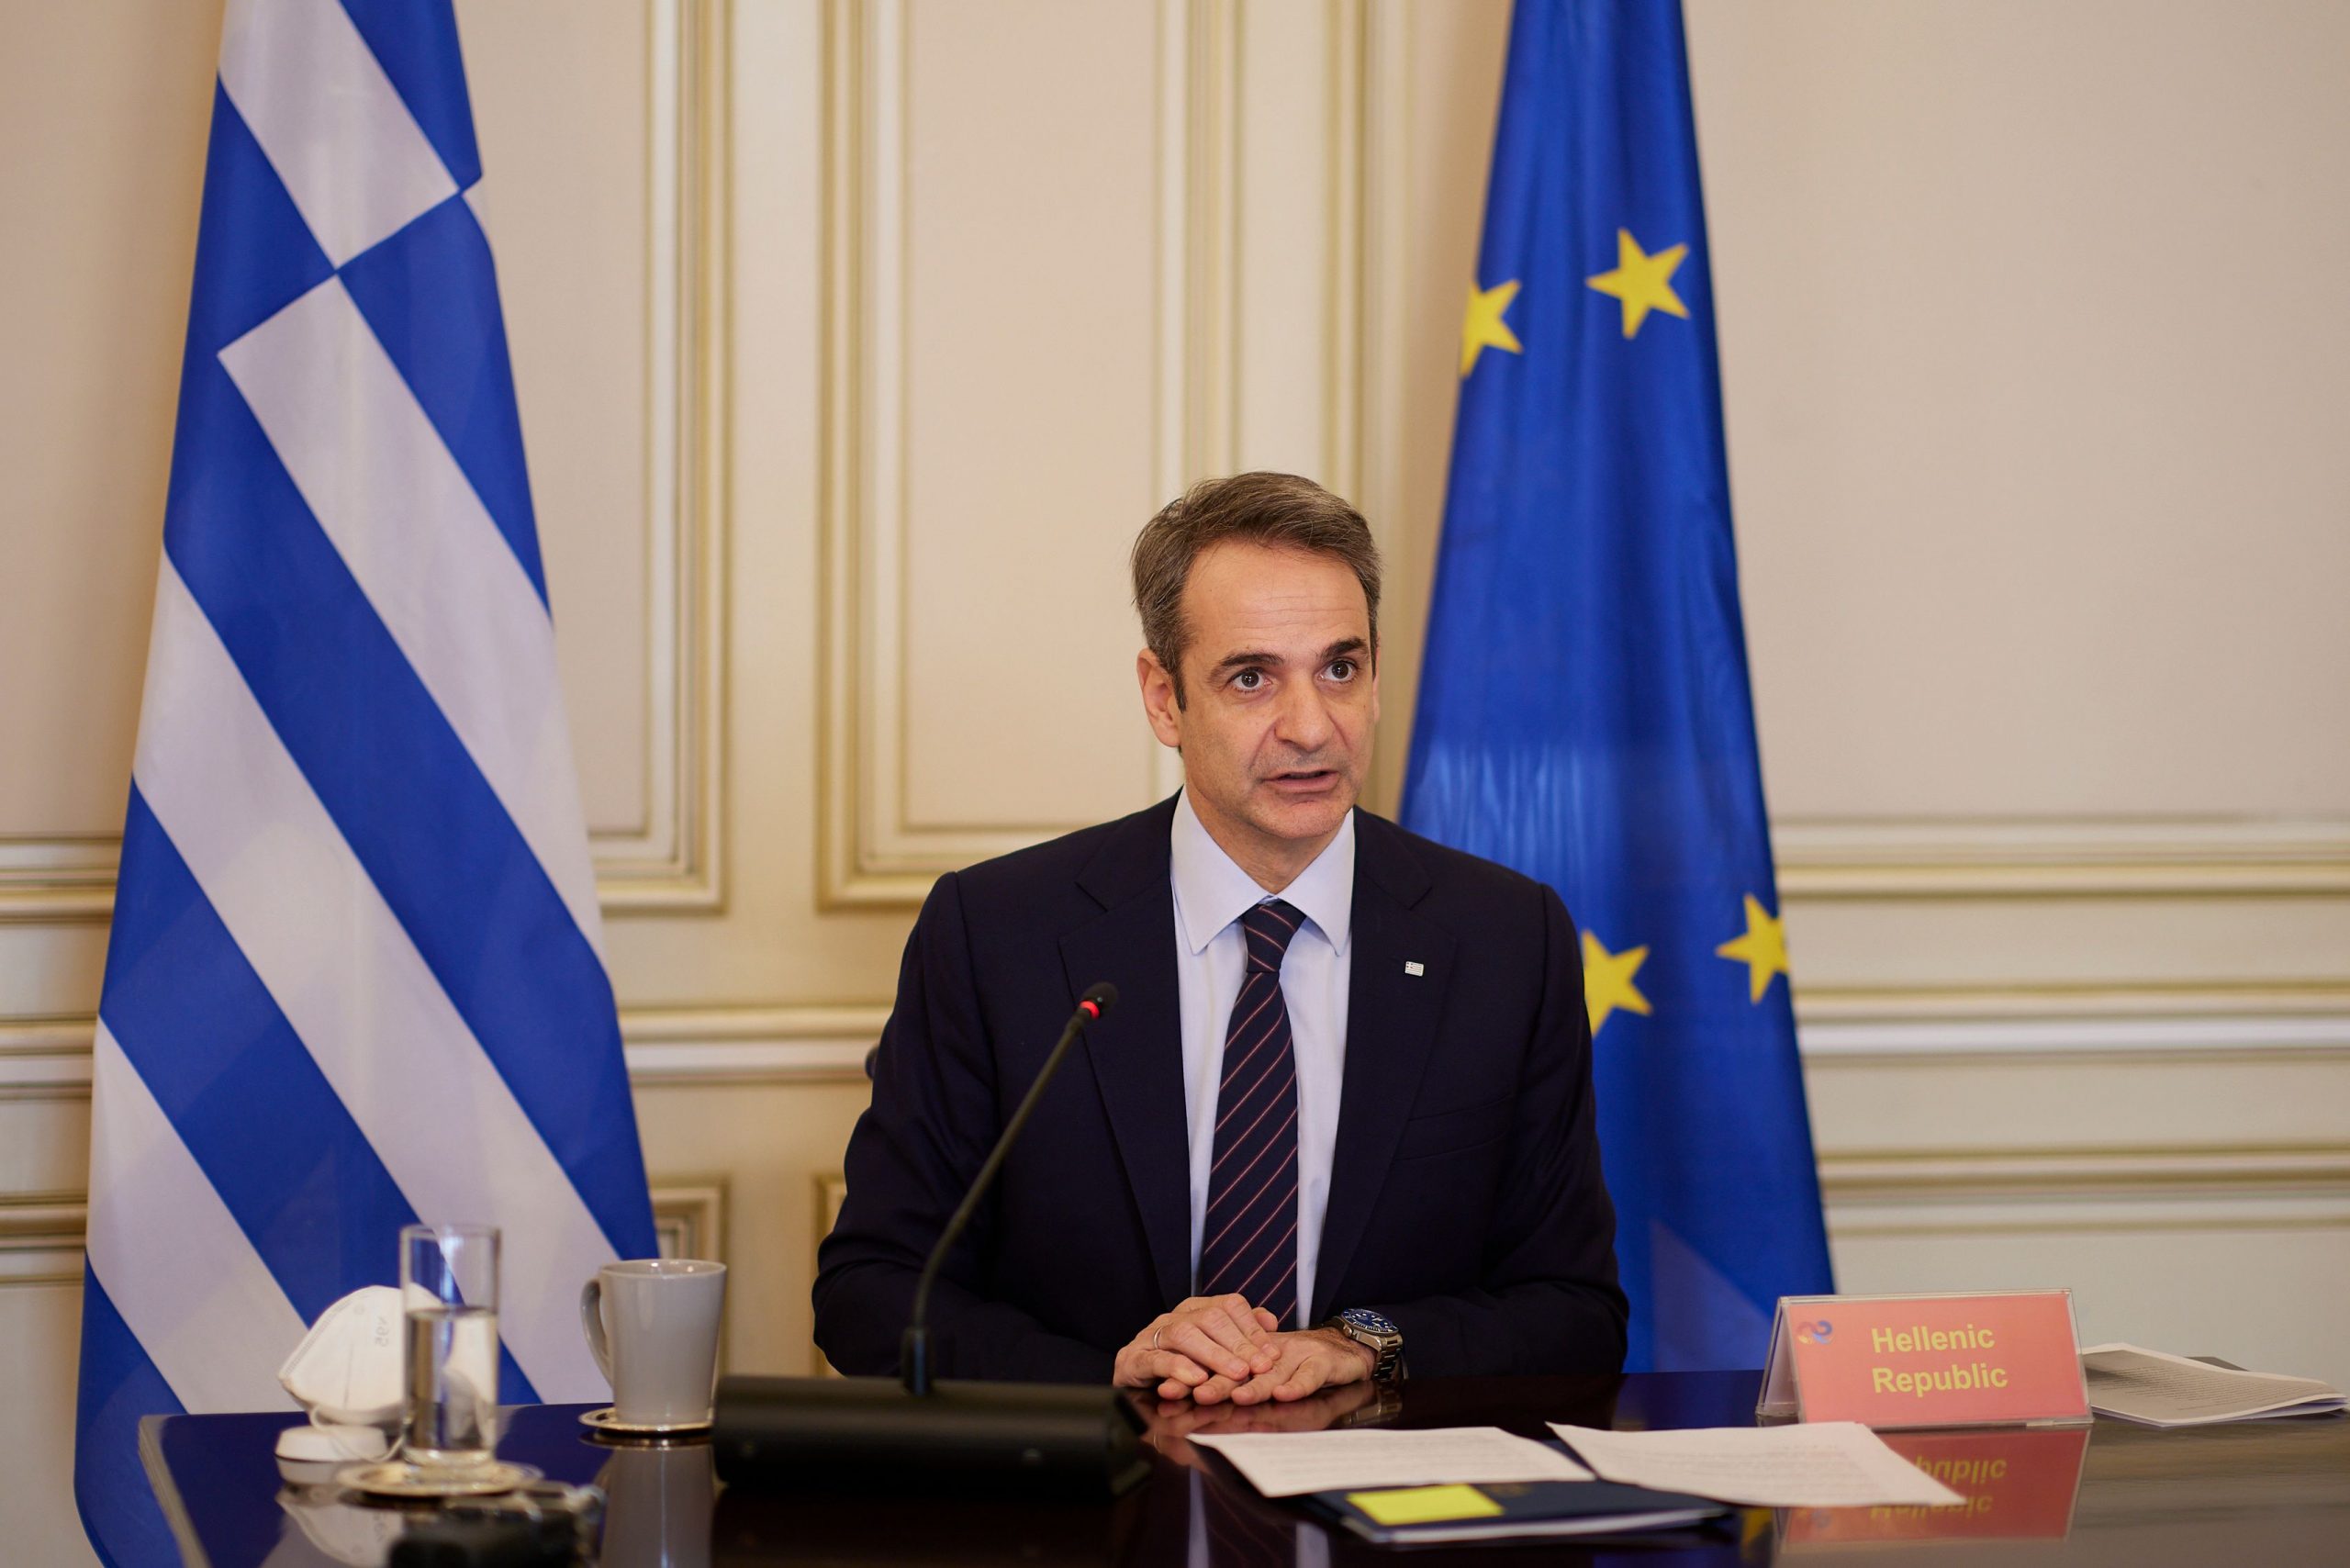 Κυρ. Μητσοτάκης: Το 2022 ήταν ένα έτος γεμάτο προκλήσεις αλλά και βήματα προόδου για τη χώρα μας – Οι επιδόσεις της Ελλάδας είναι η θετική έκπληξη στην Ευρώπη